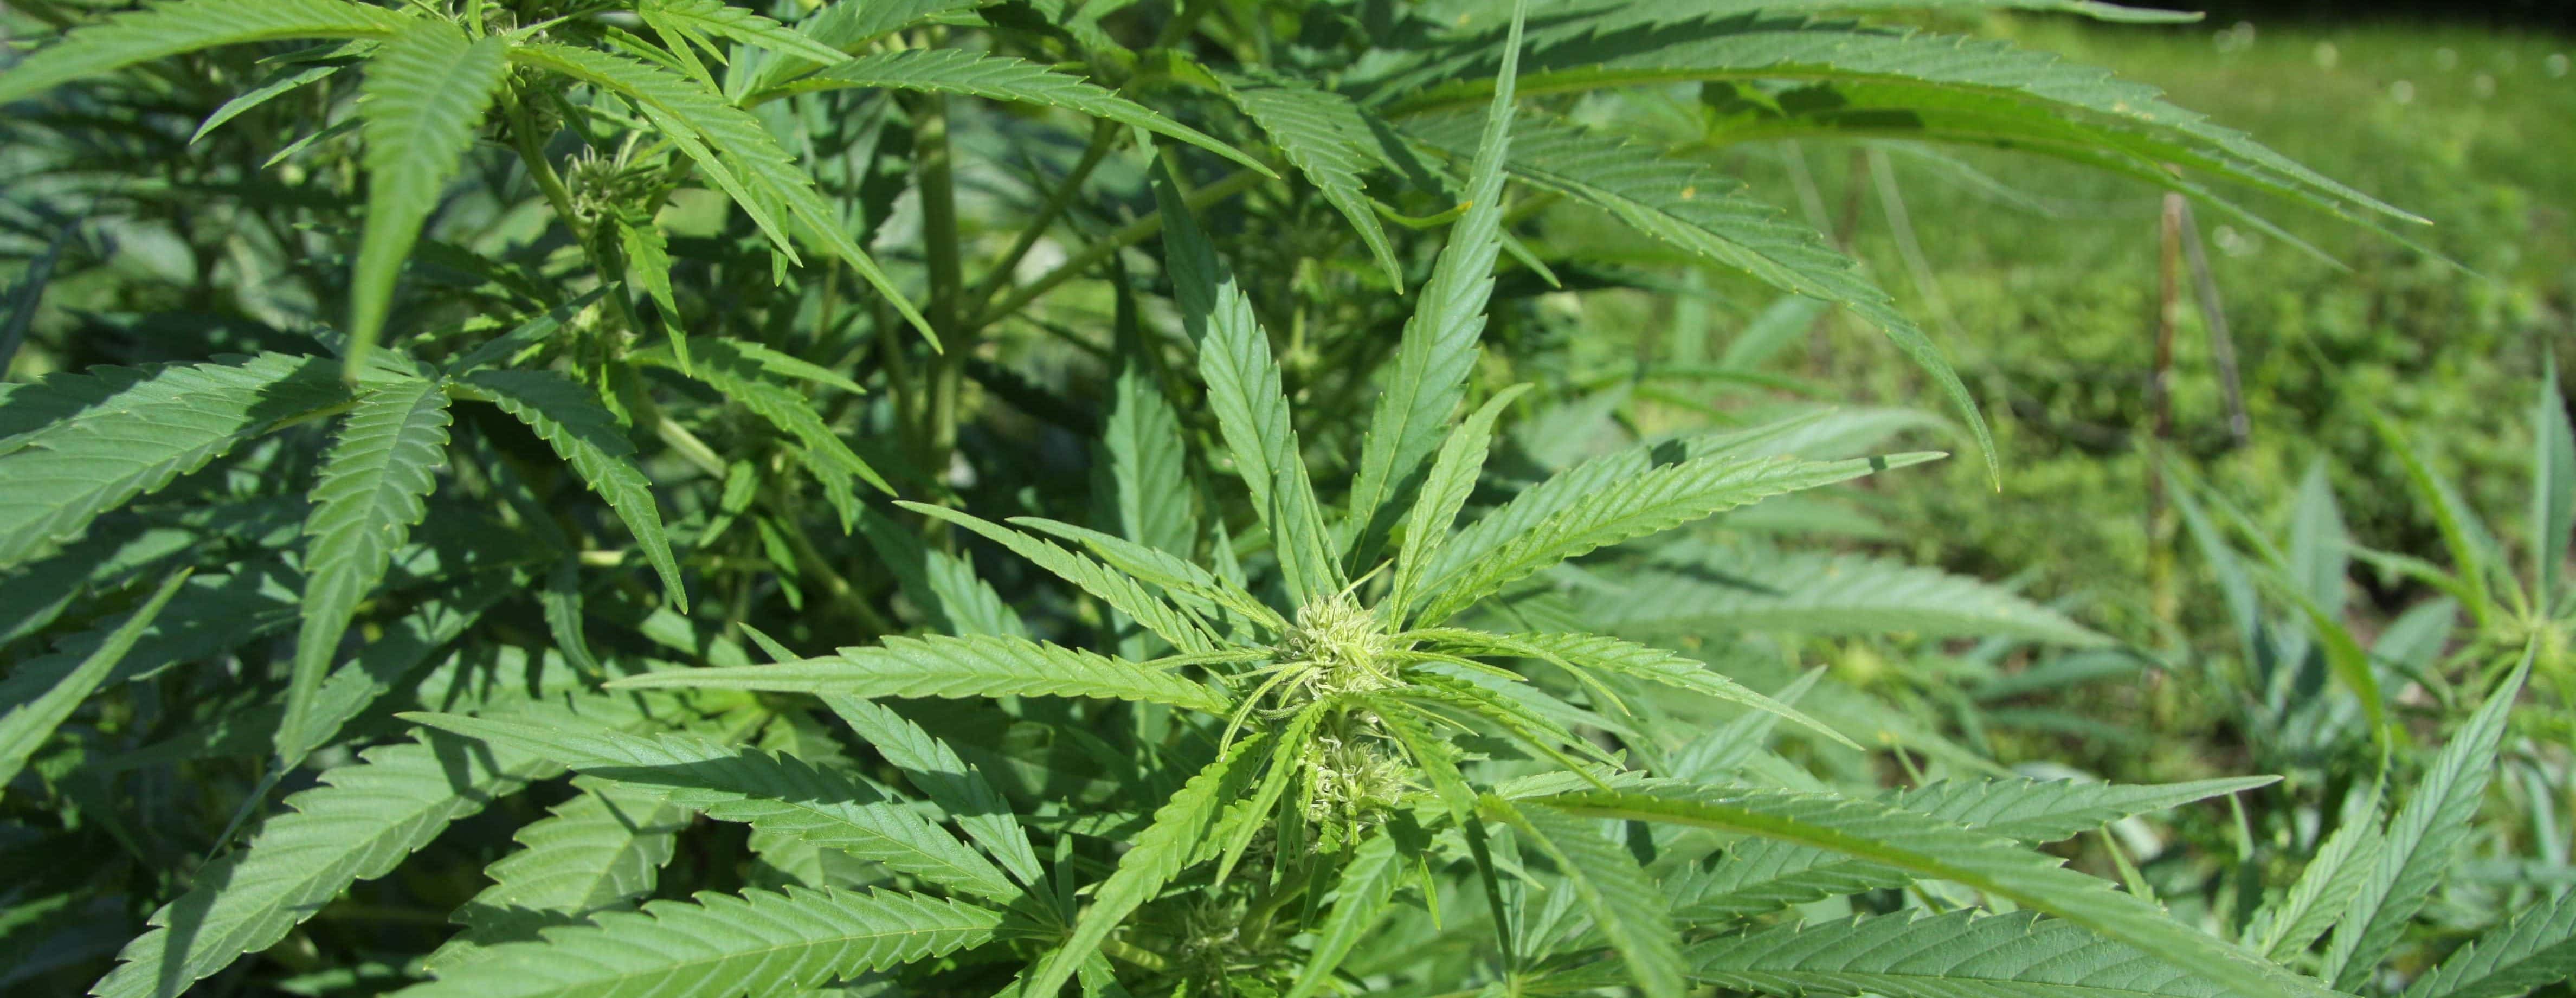 hemp-cannabis-jpg-9